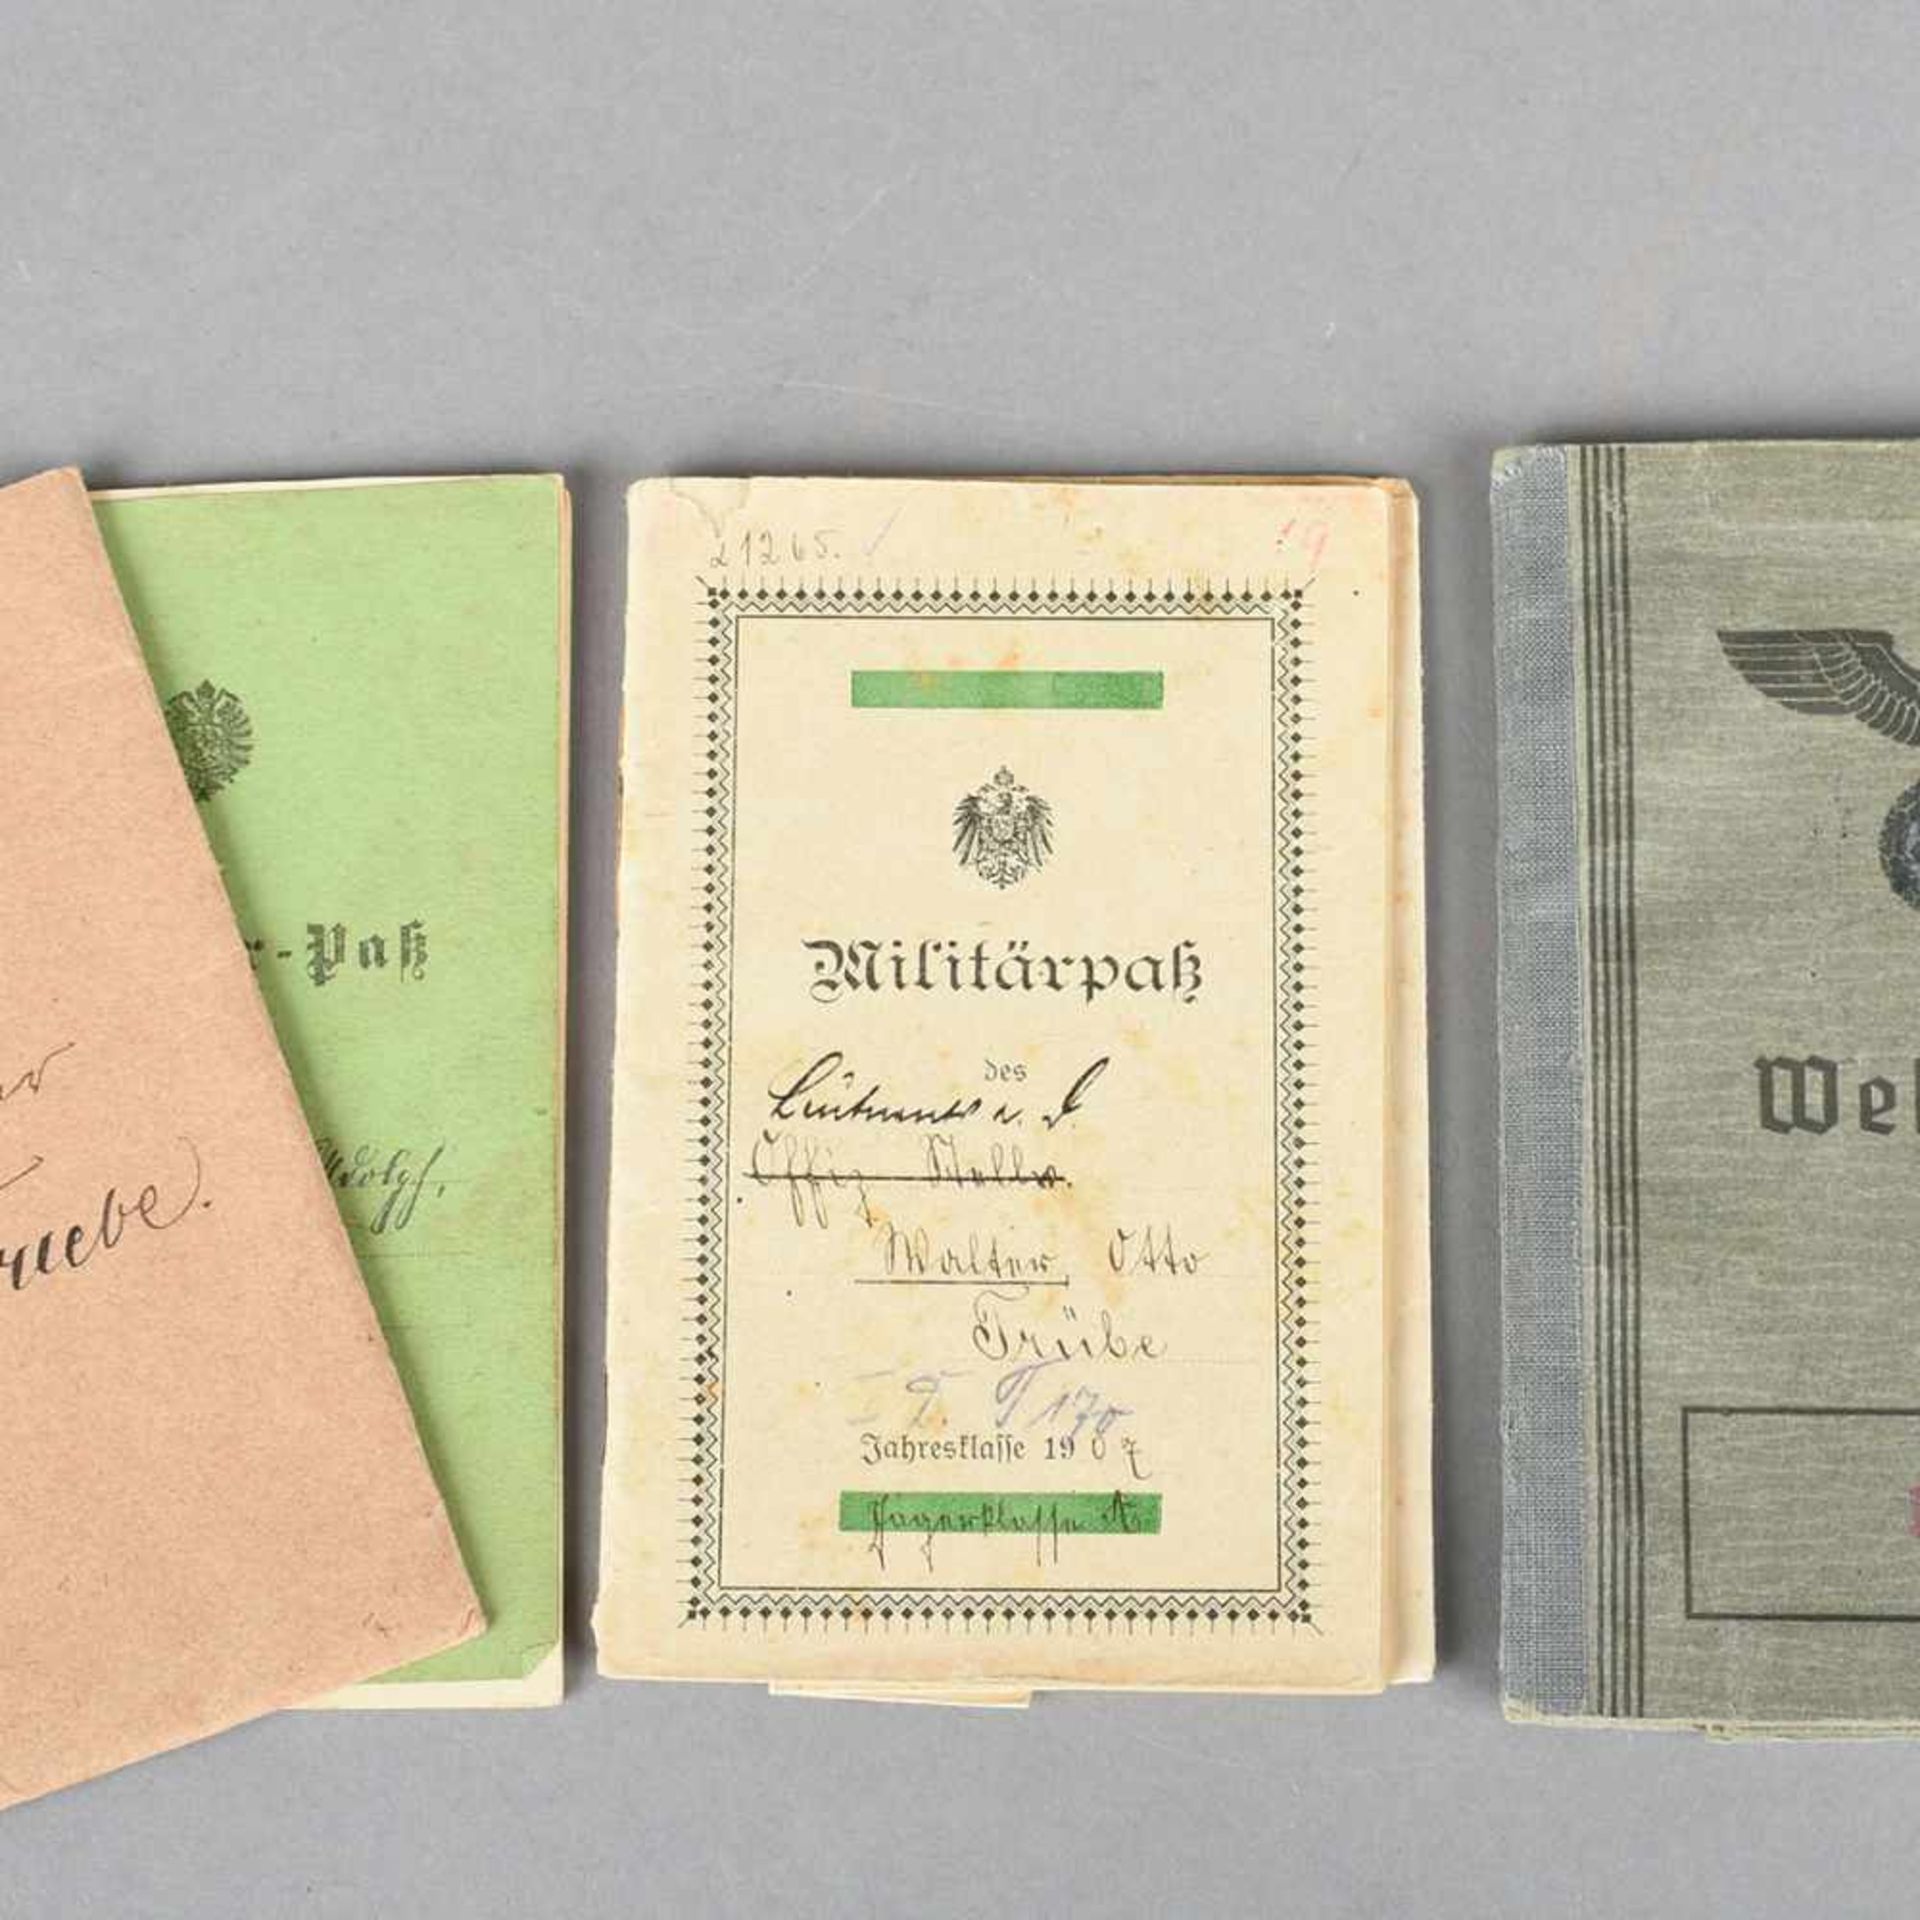 Historische Militärpässe insg. 3 versch. Ausgaben mit Eintragungen, 1 x 1875, 1 x 1907 sowie 1 x